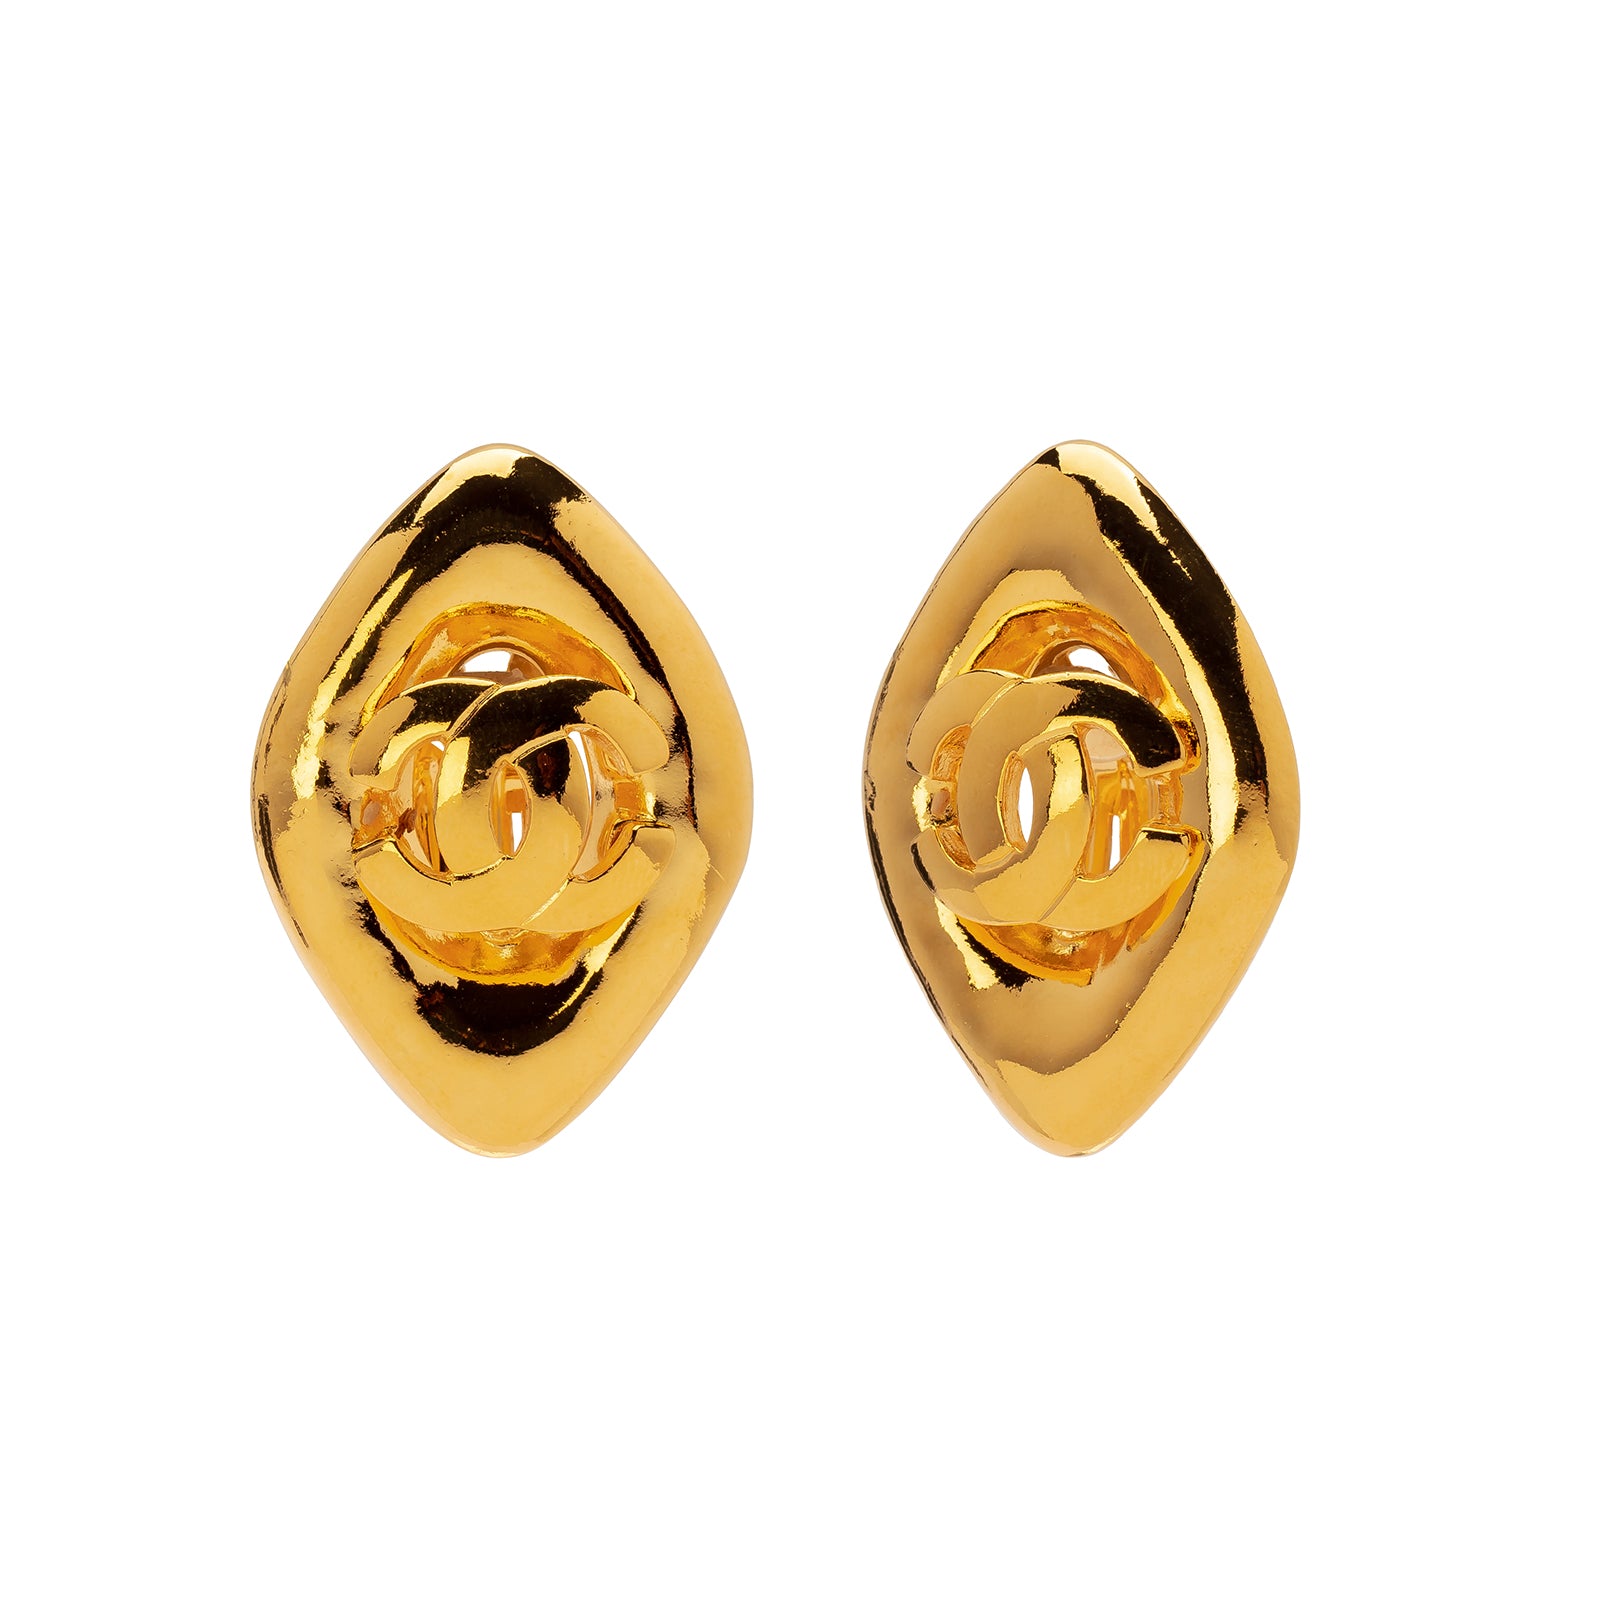 Antique & Vintage Jewelry Chanel Diamond Shaped Logo Earrings - Earrings - Broken English Jewelry